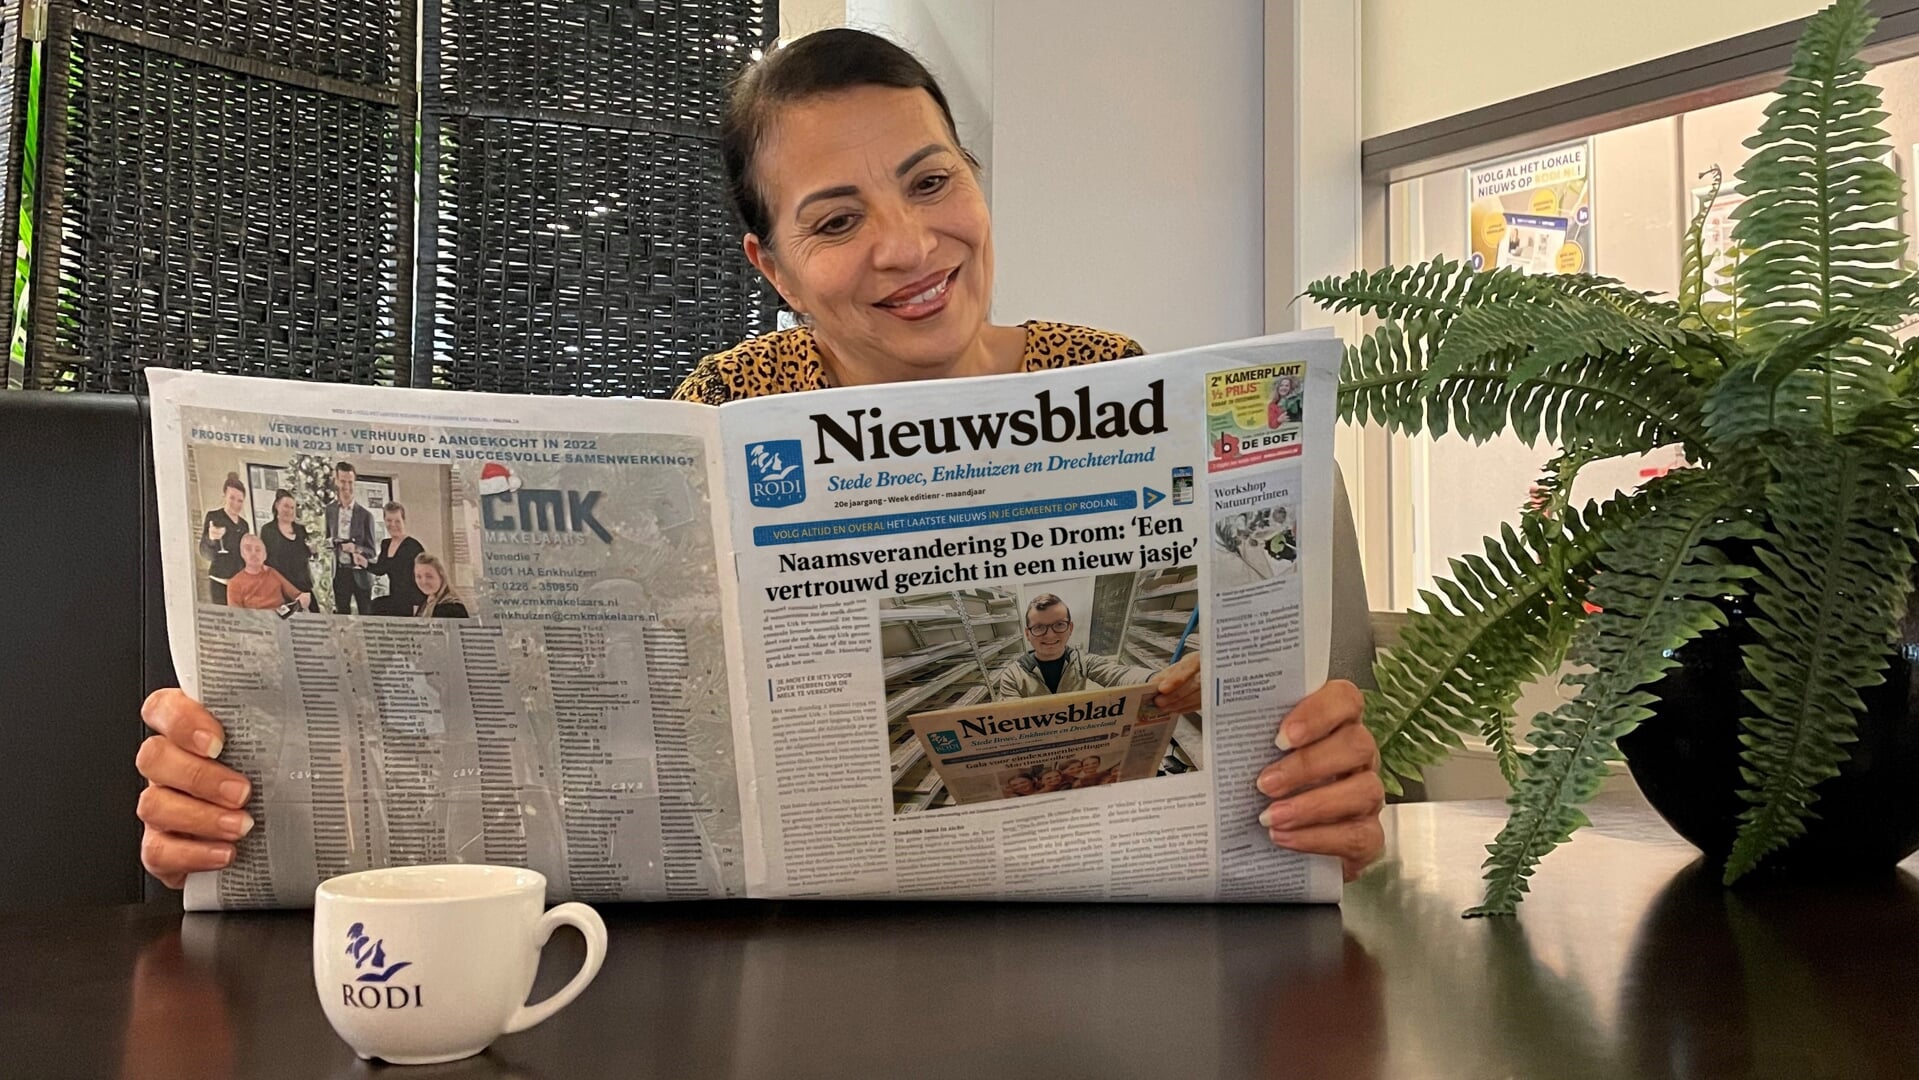 Sylvia Werst - de verkoper van de Drom - laat de nieuwe titel van de krant zien met daarop een foto van de redacteur; Jordy Gomes. De editie gaat voortaan verder onder de naam 'Nieuwsblad Stede Broec, Enkhuizen en Drechterland.'